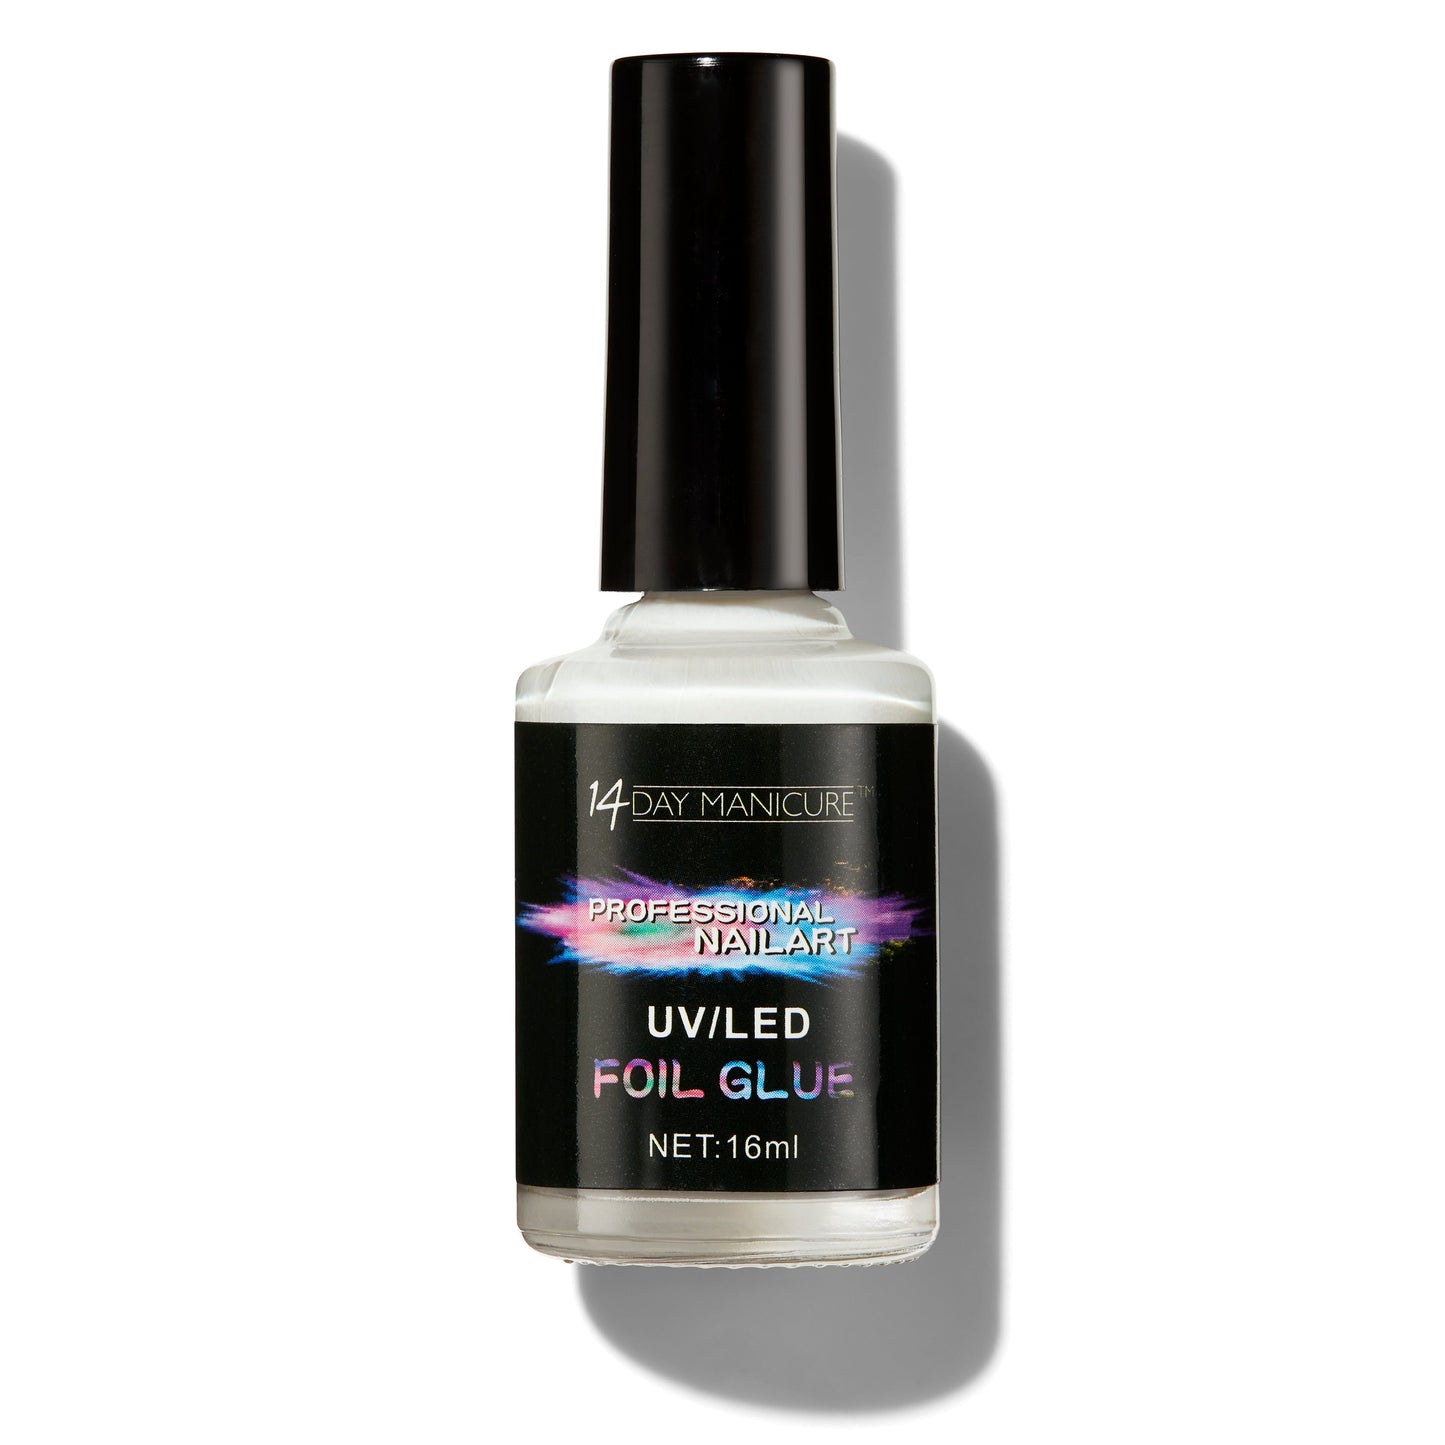 Foil Glue - 14 Day Manicure - 1